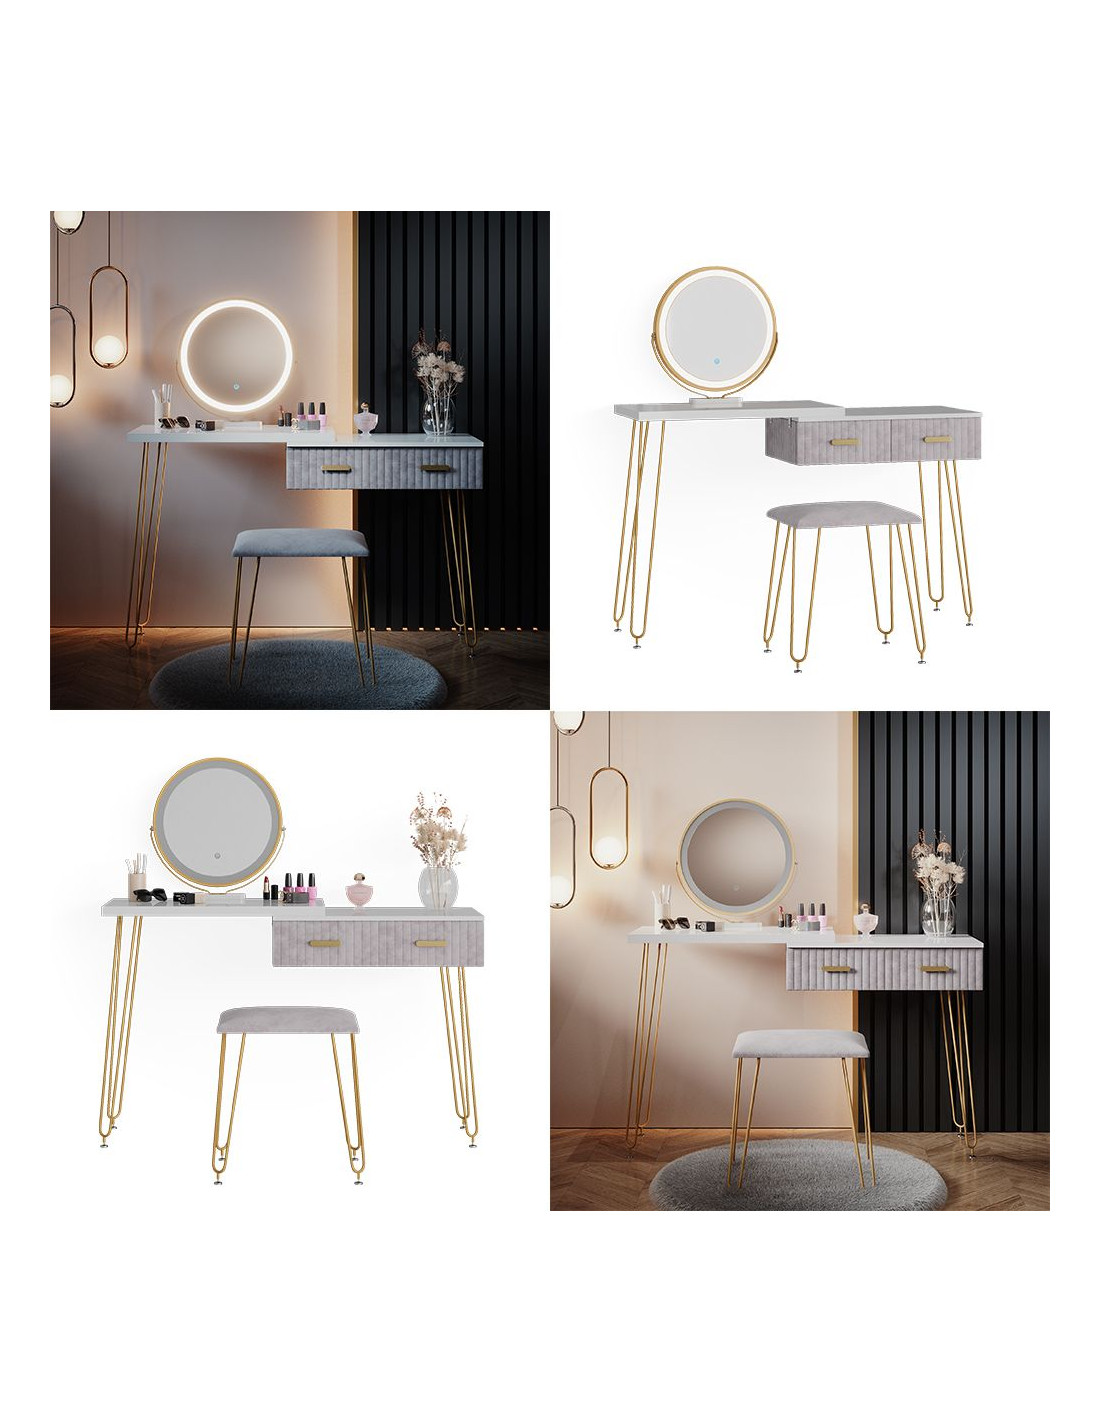 Coiffeuse blanche 2 tiroirs Miroir LED + Tabouret Table manucure - Ciel &  terre